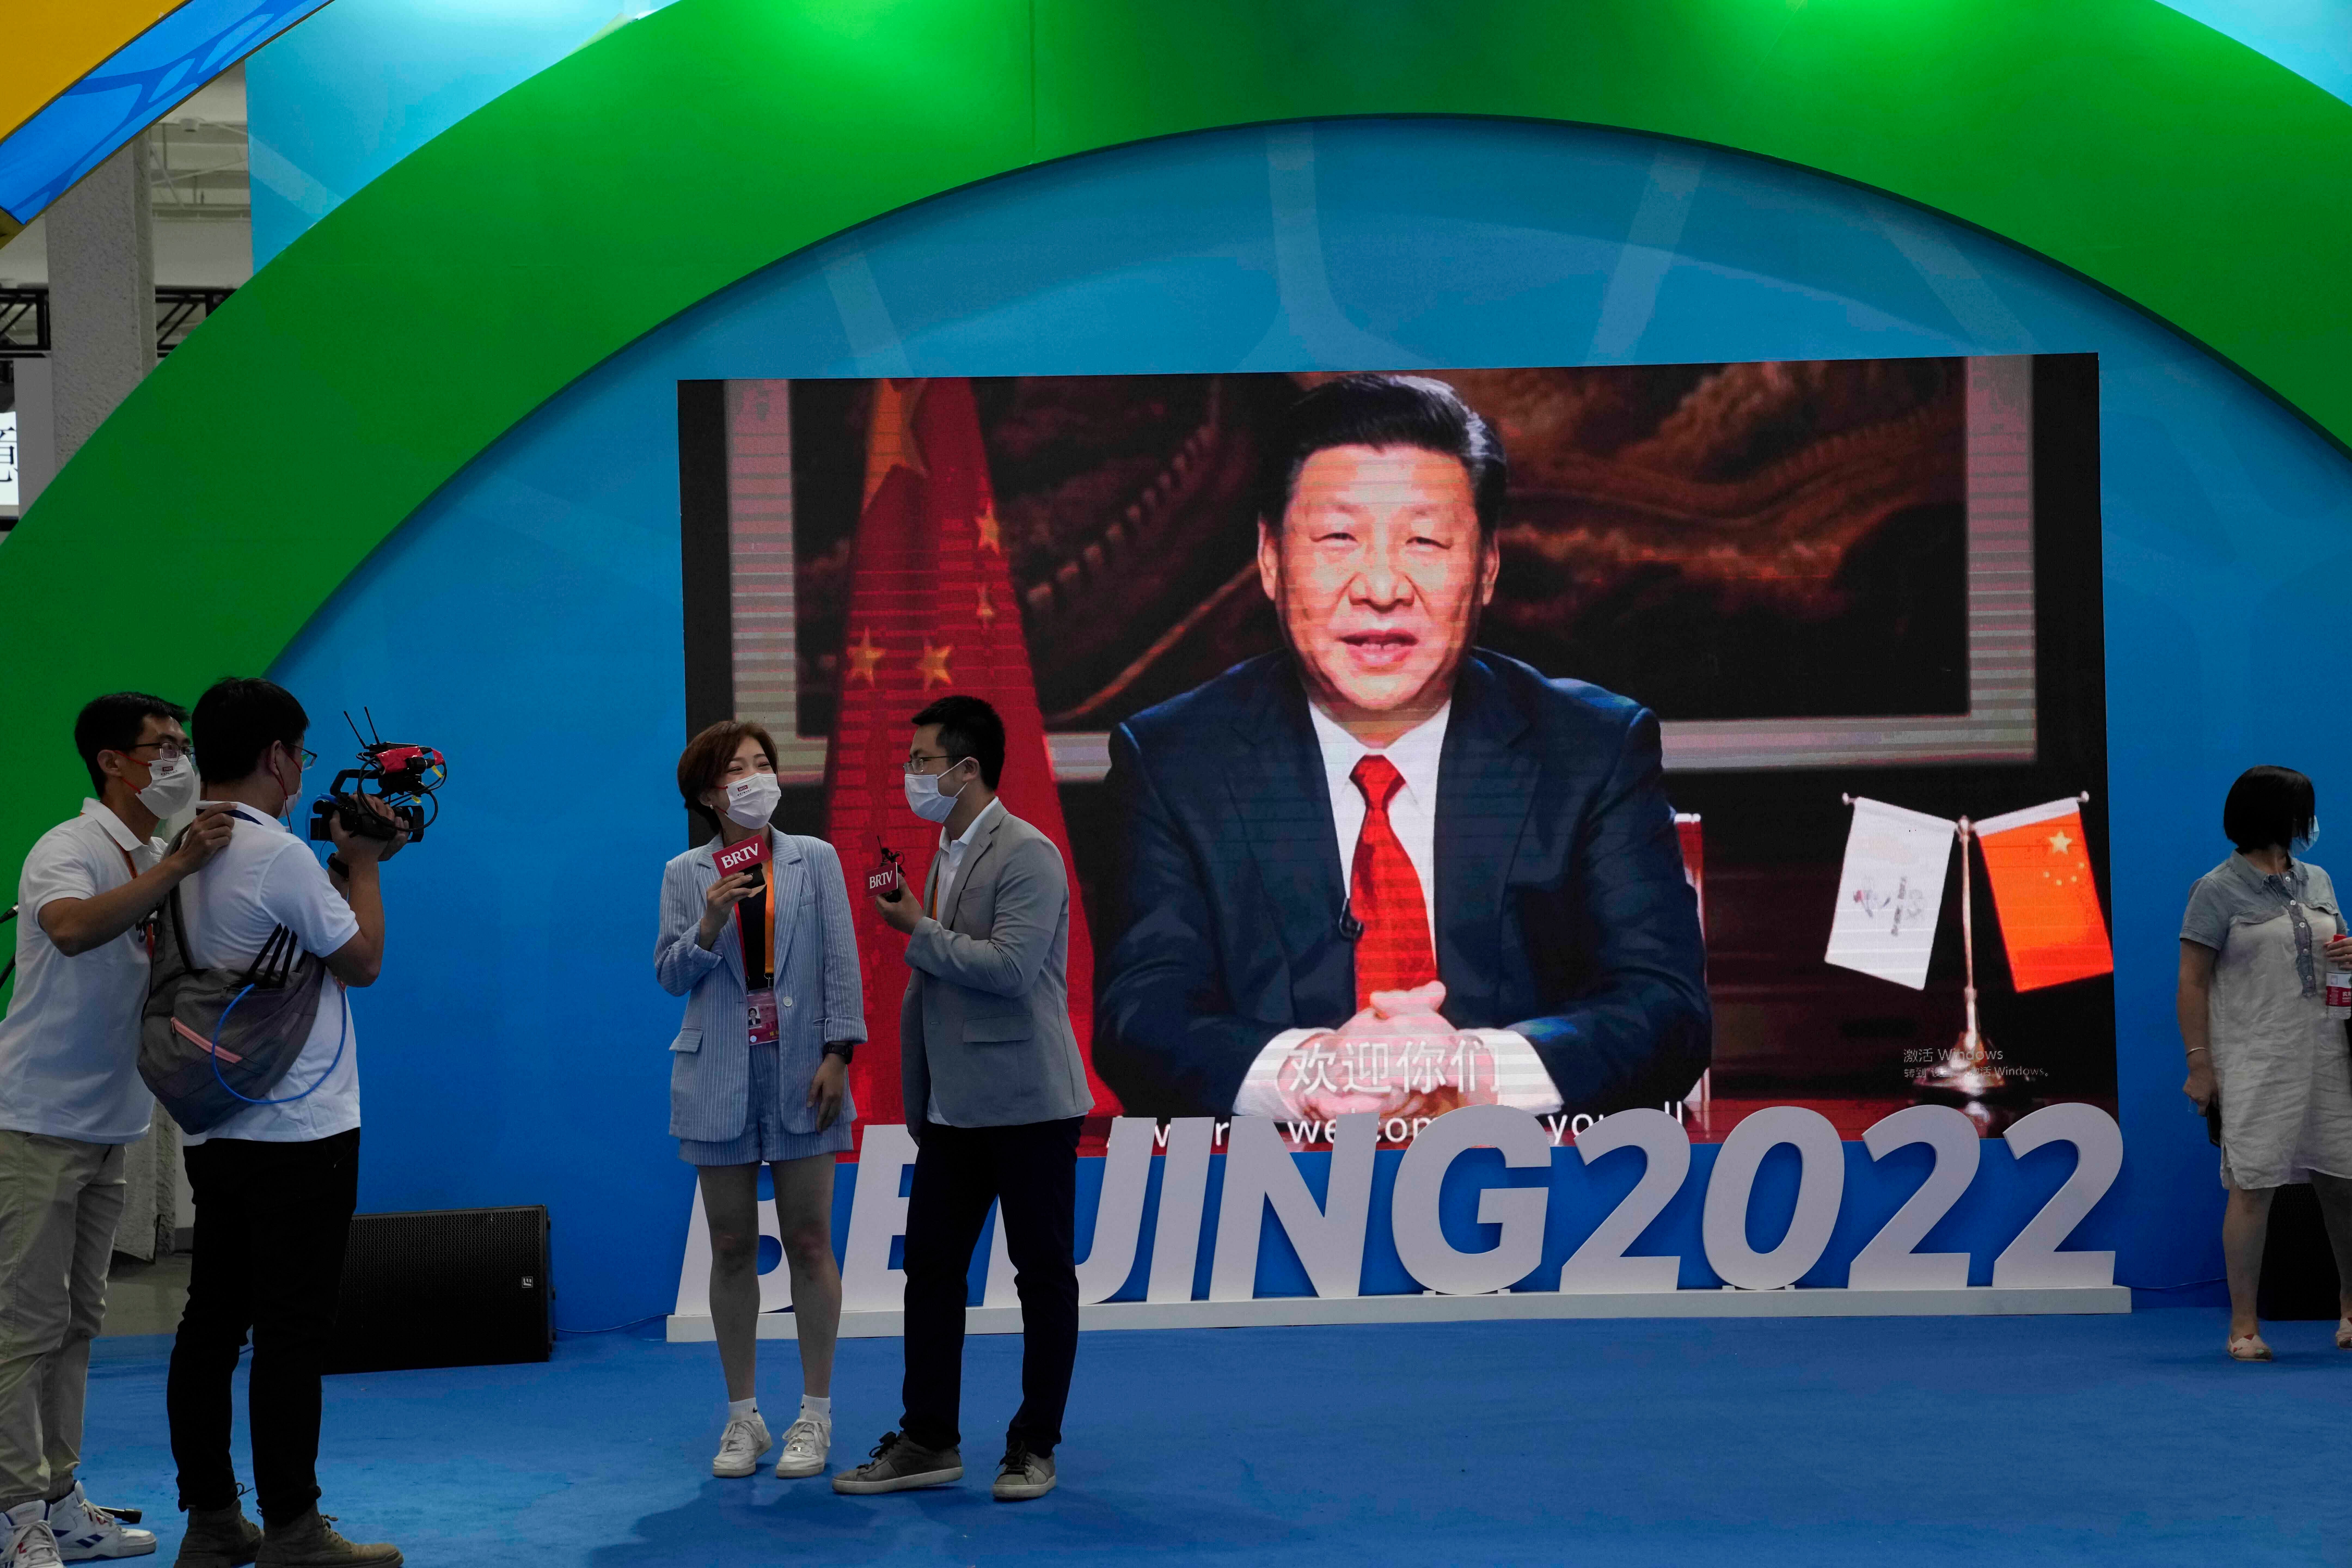 Le président chinois Xi Jinping sur un écran dans un stand de promotion des sports d’hiver pour les Jeux olympiques d'hiver de 2022 à Pékin, lors d’une foire commerciale à Pékin, en Chine, le 5 septembre 2021.